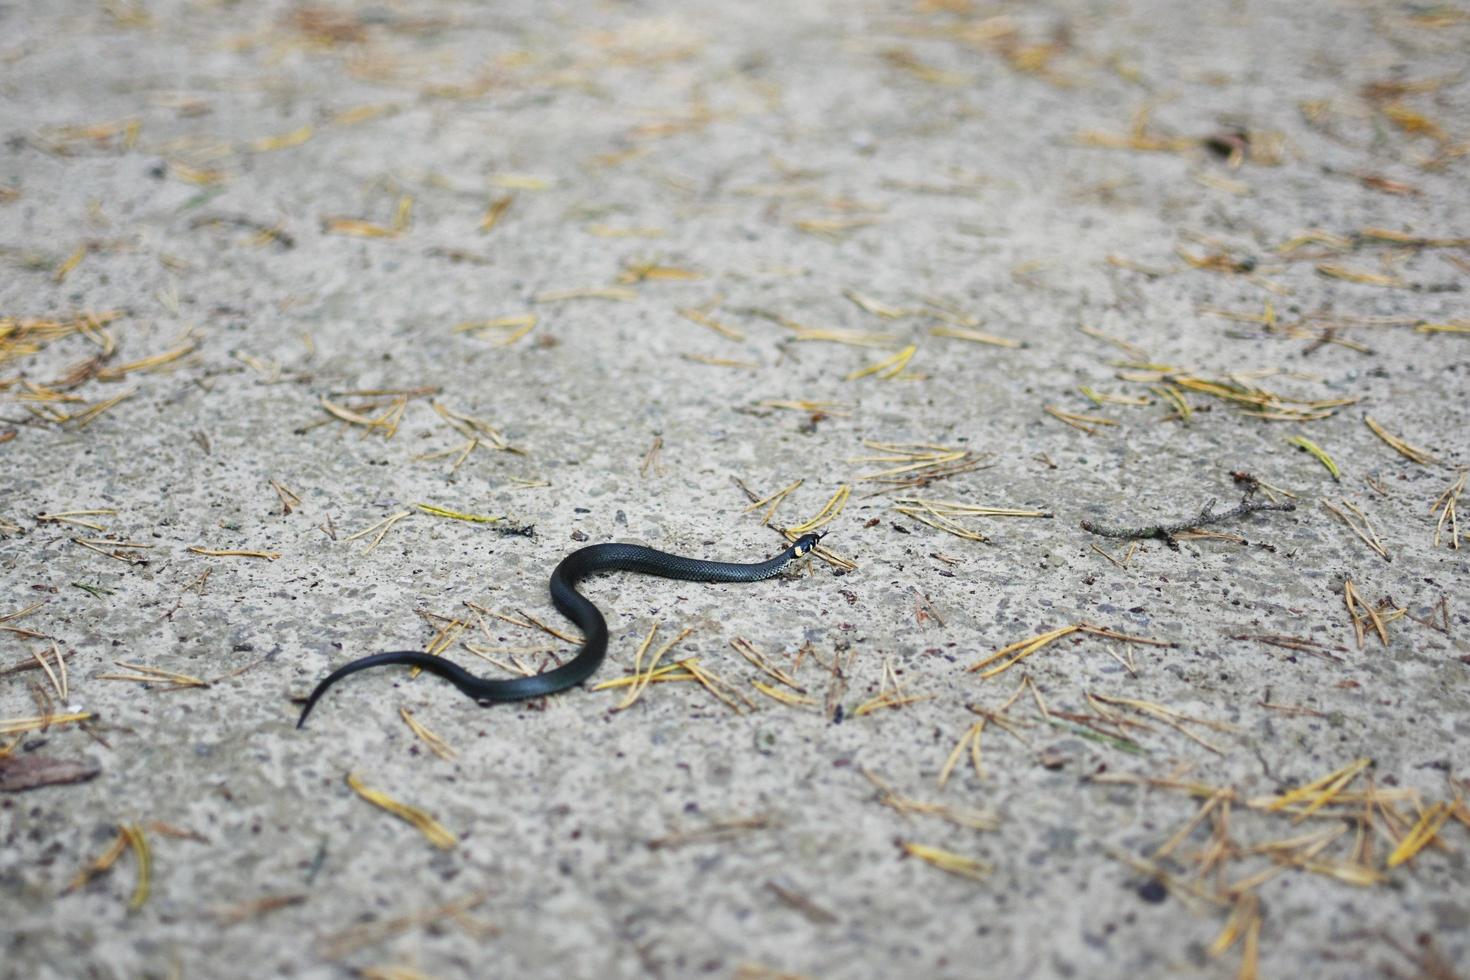 Little grass snake photo